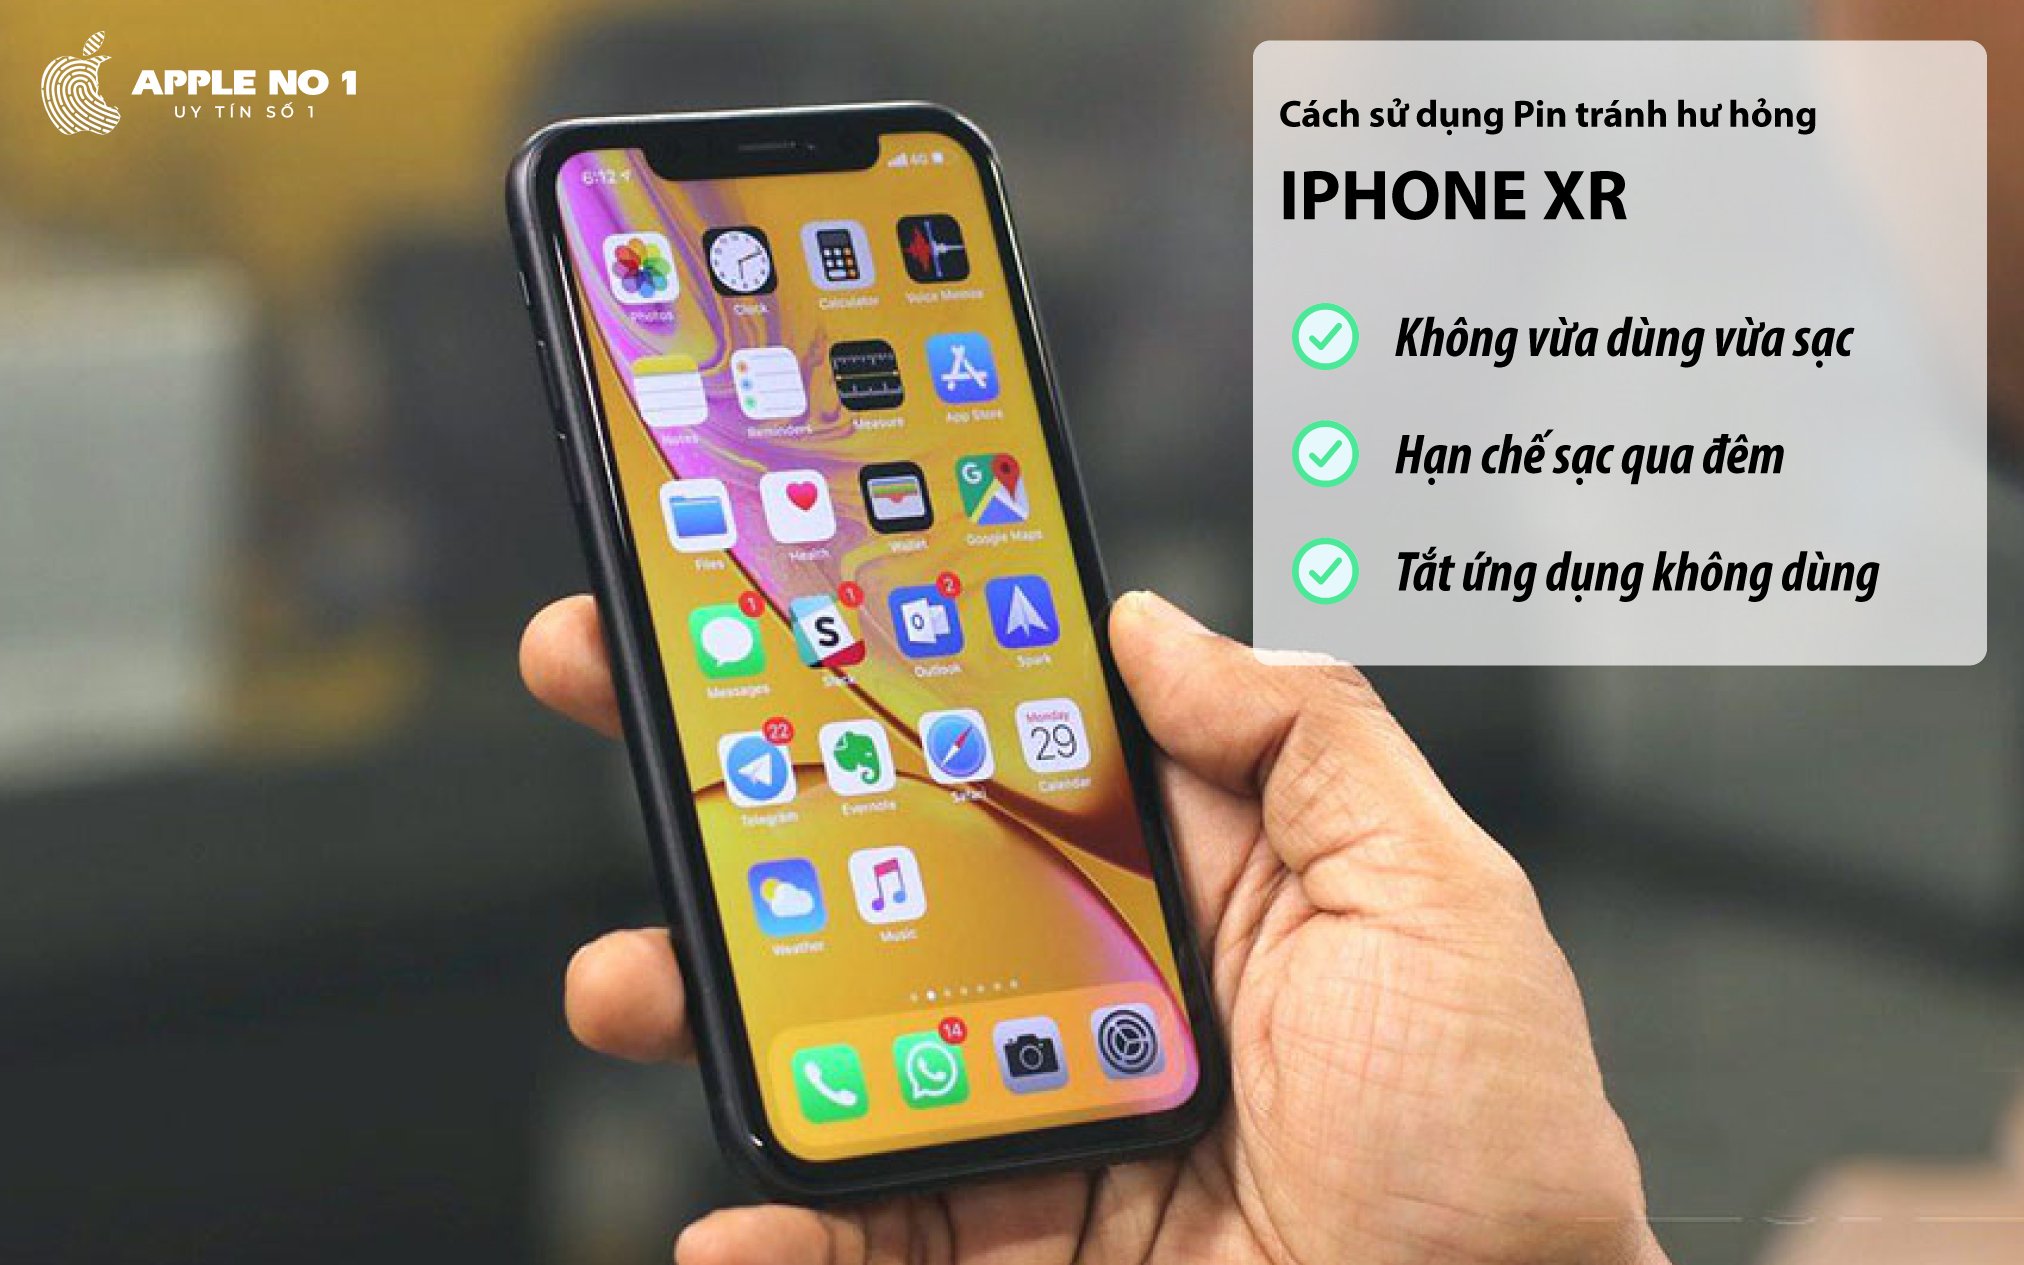 Sử dụng điện thoại iPhone XR như thế nào để pin không bị hư hỏng ?